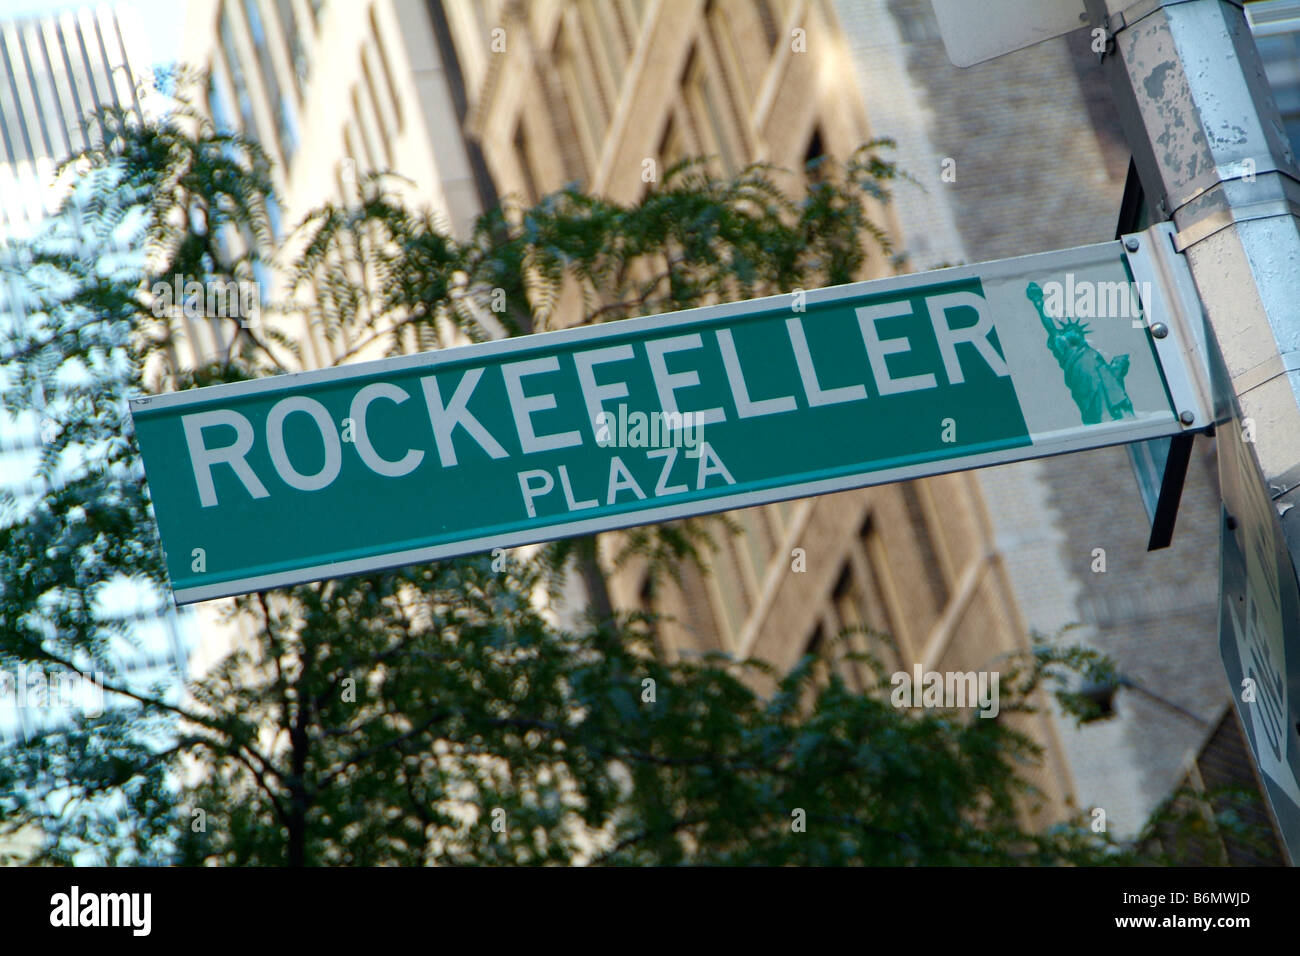 Street sign for Rockefeller Plaza New York Stock Photo